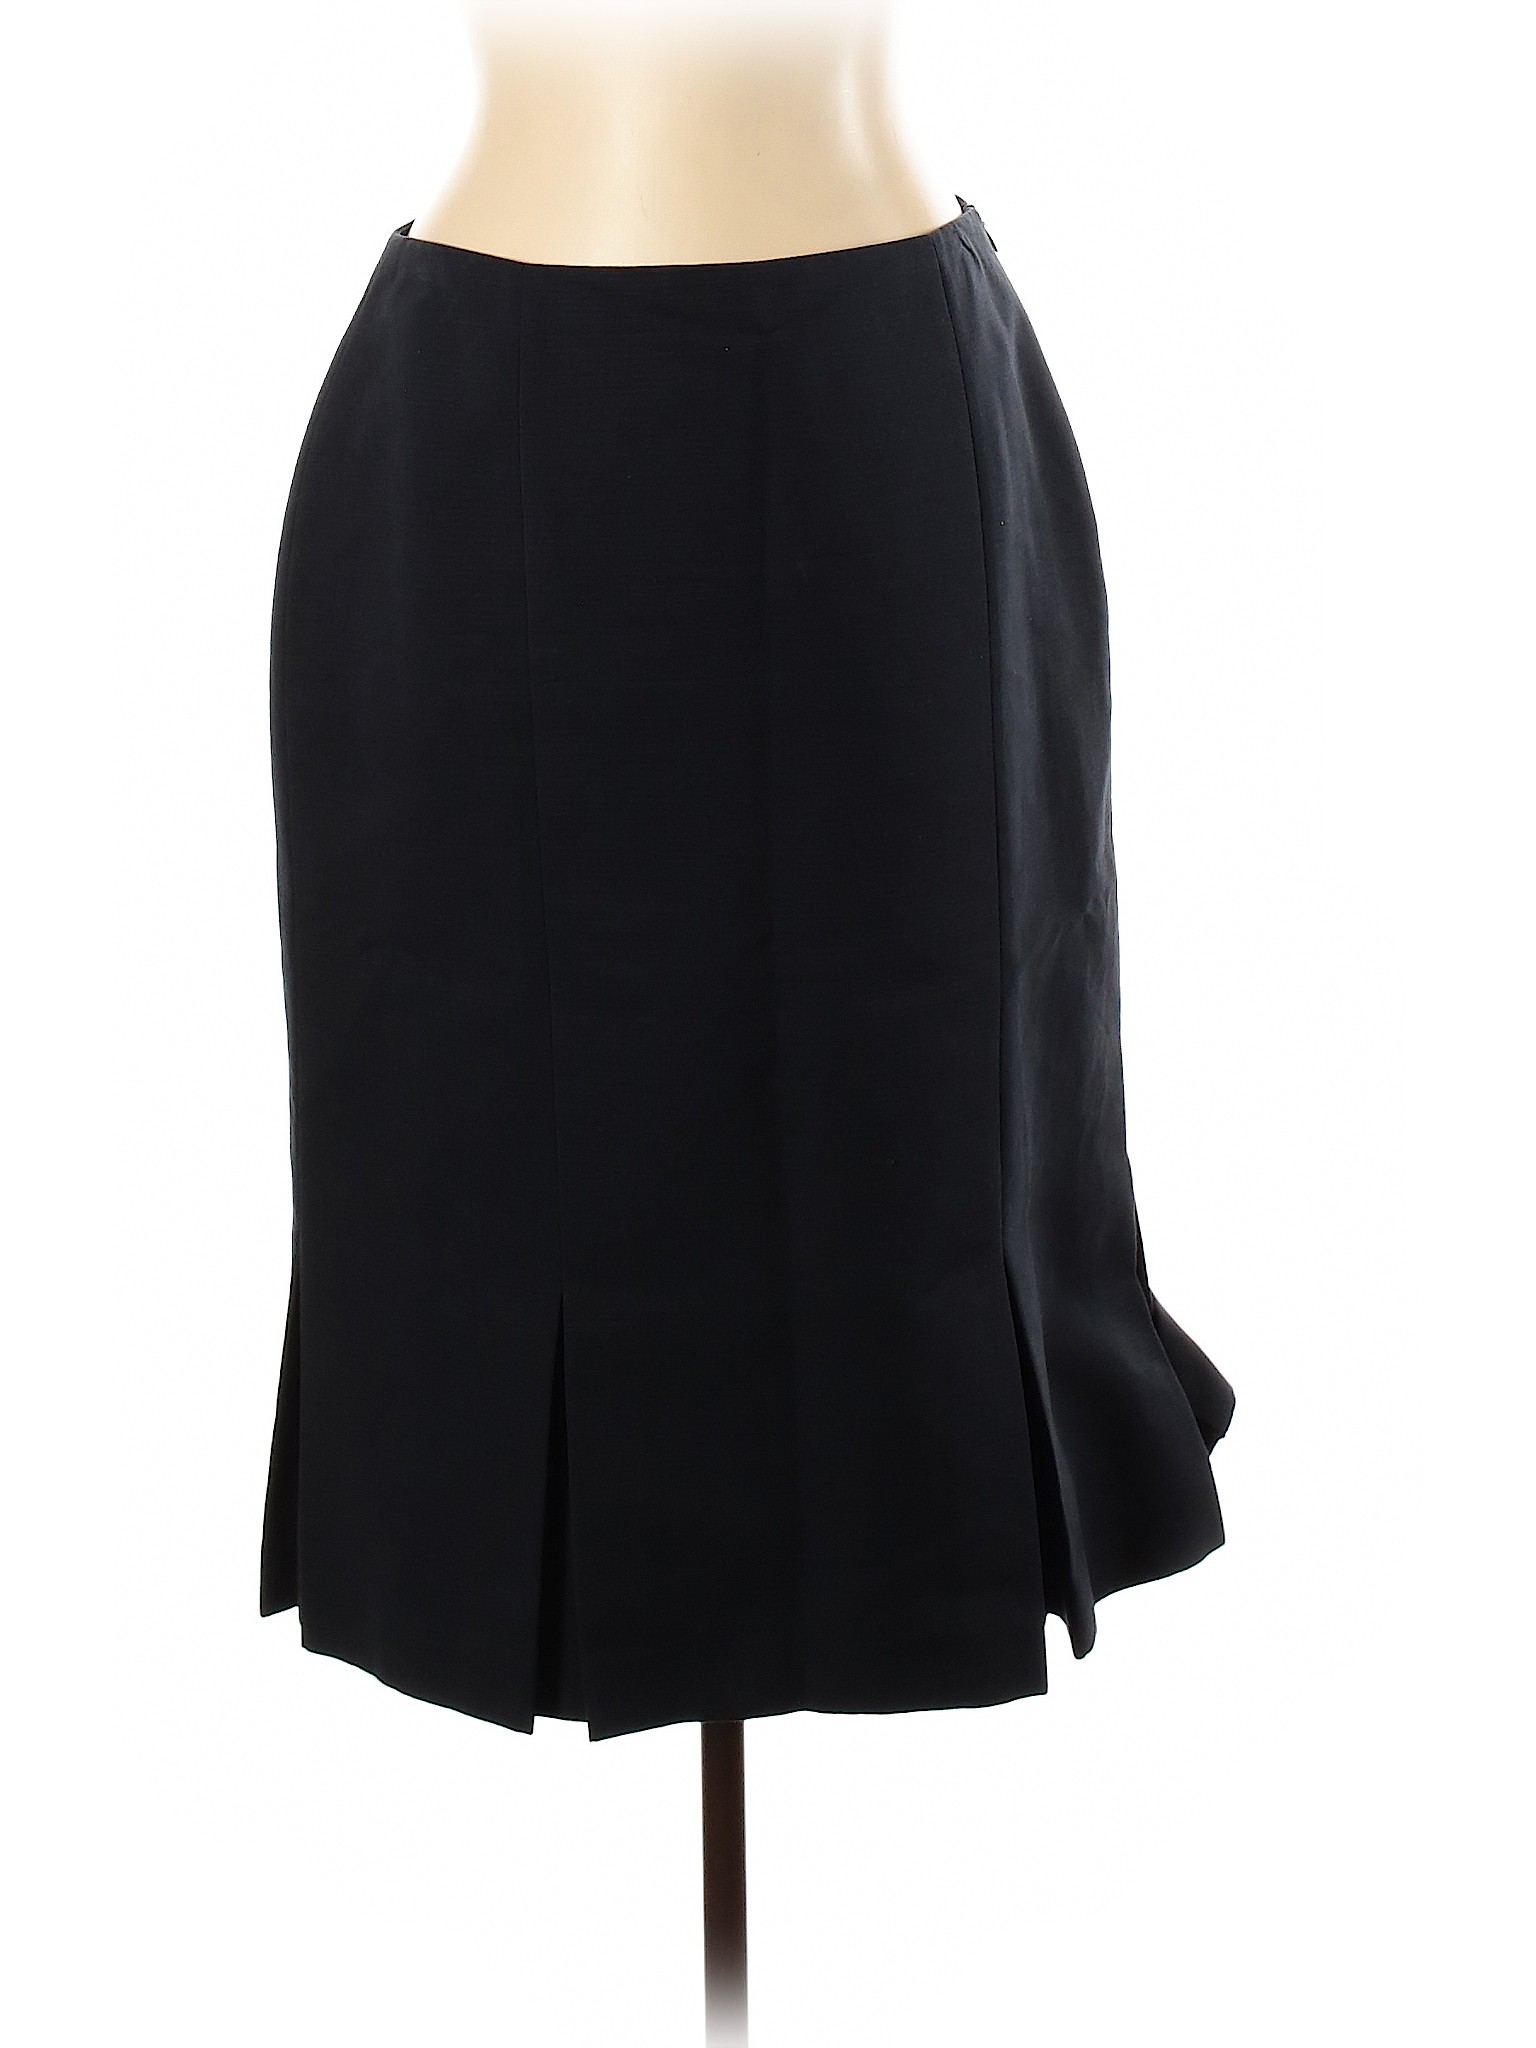 Barneys New York Women Black Casual Skirt 10 | eBay